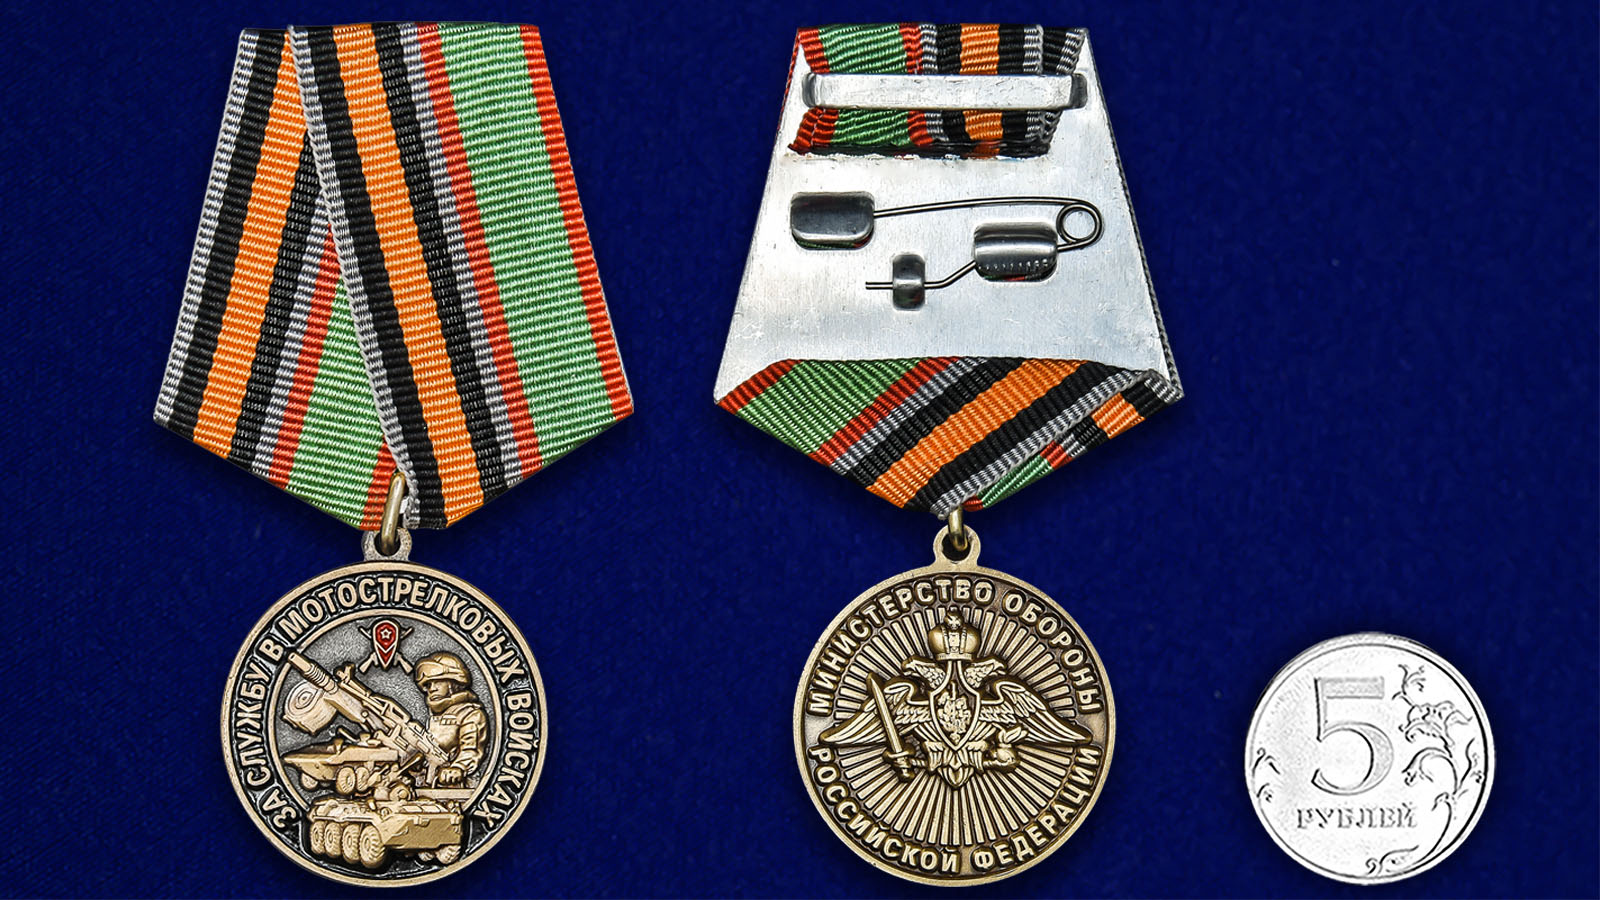 Латунная медаль "За службу в Мотострелковых войсках" 